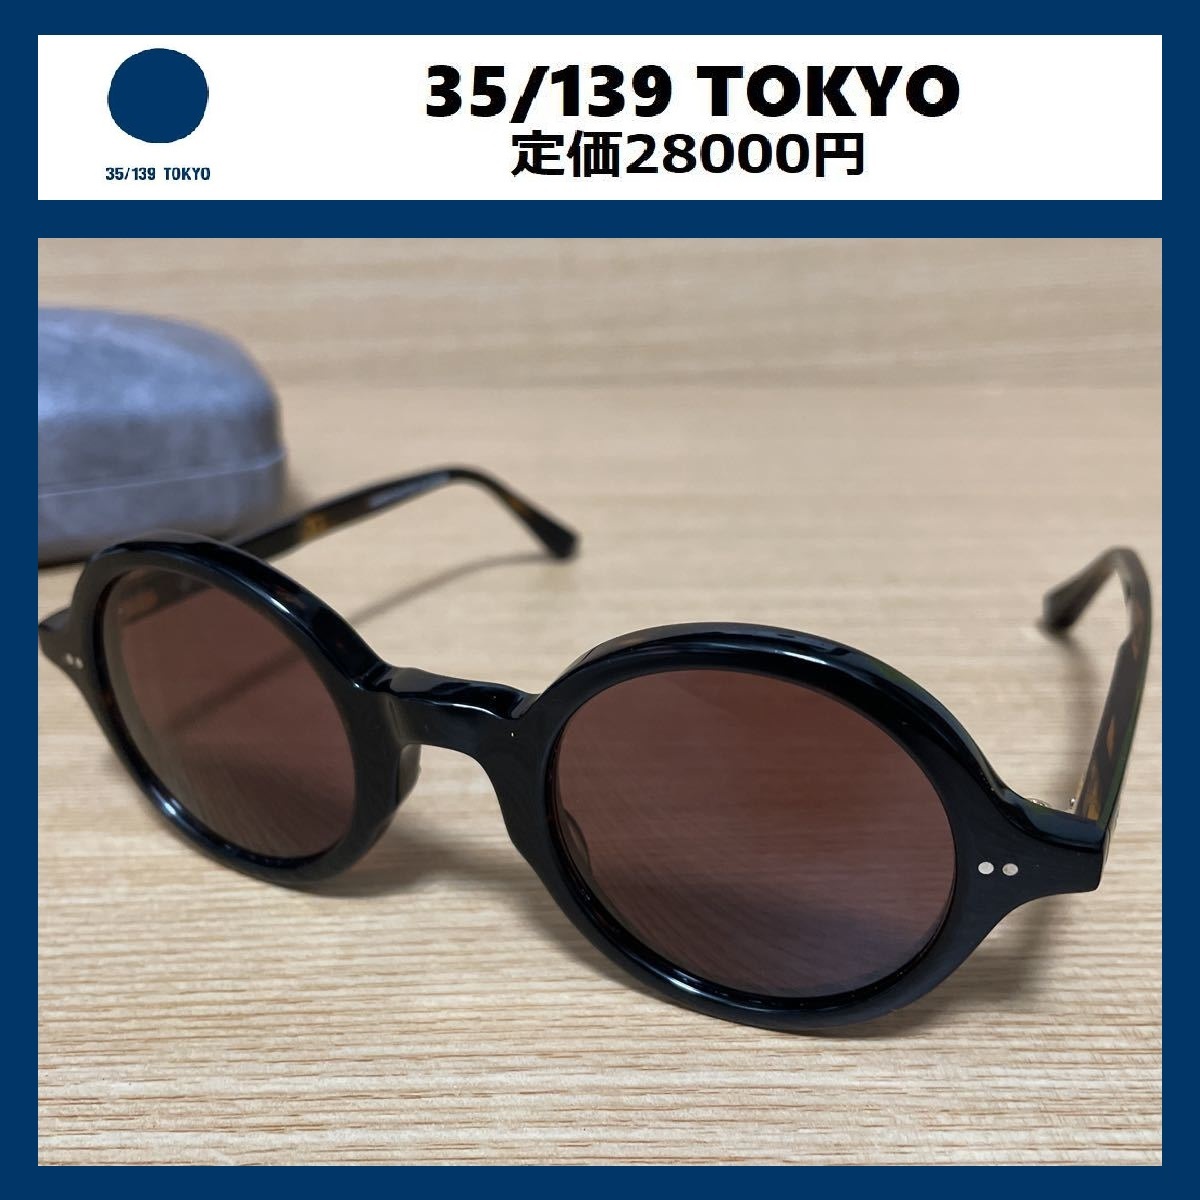 定価28000円 新品 35/139 TOKYO サングラス 150-0001 TAKE メガネ